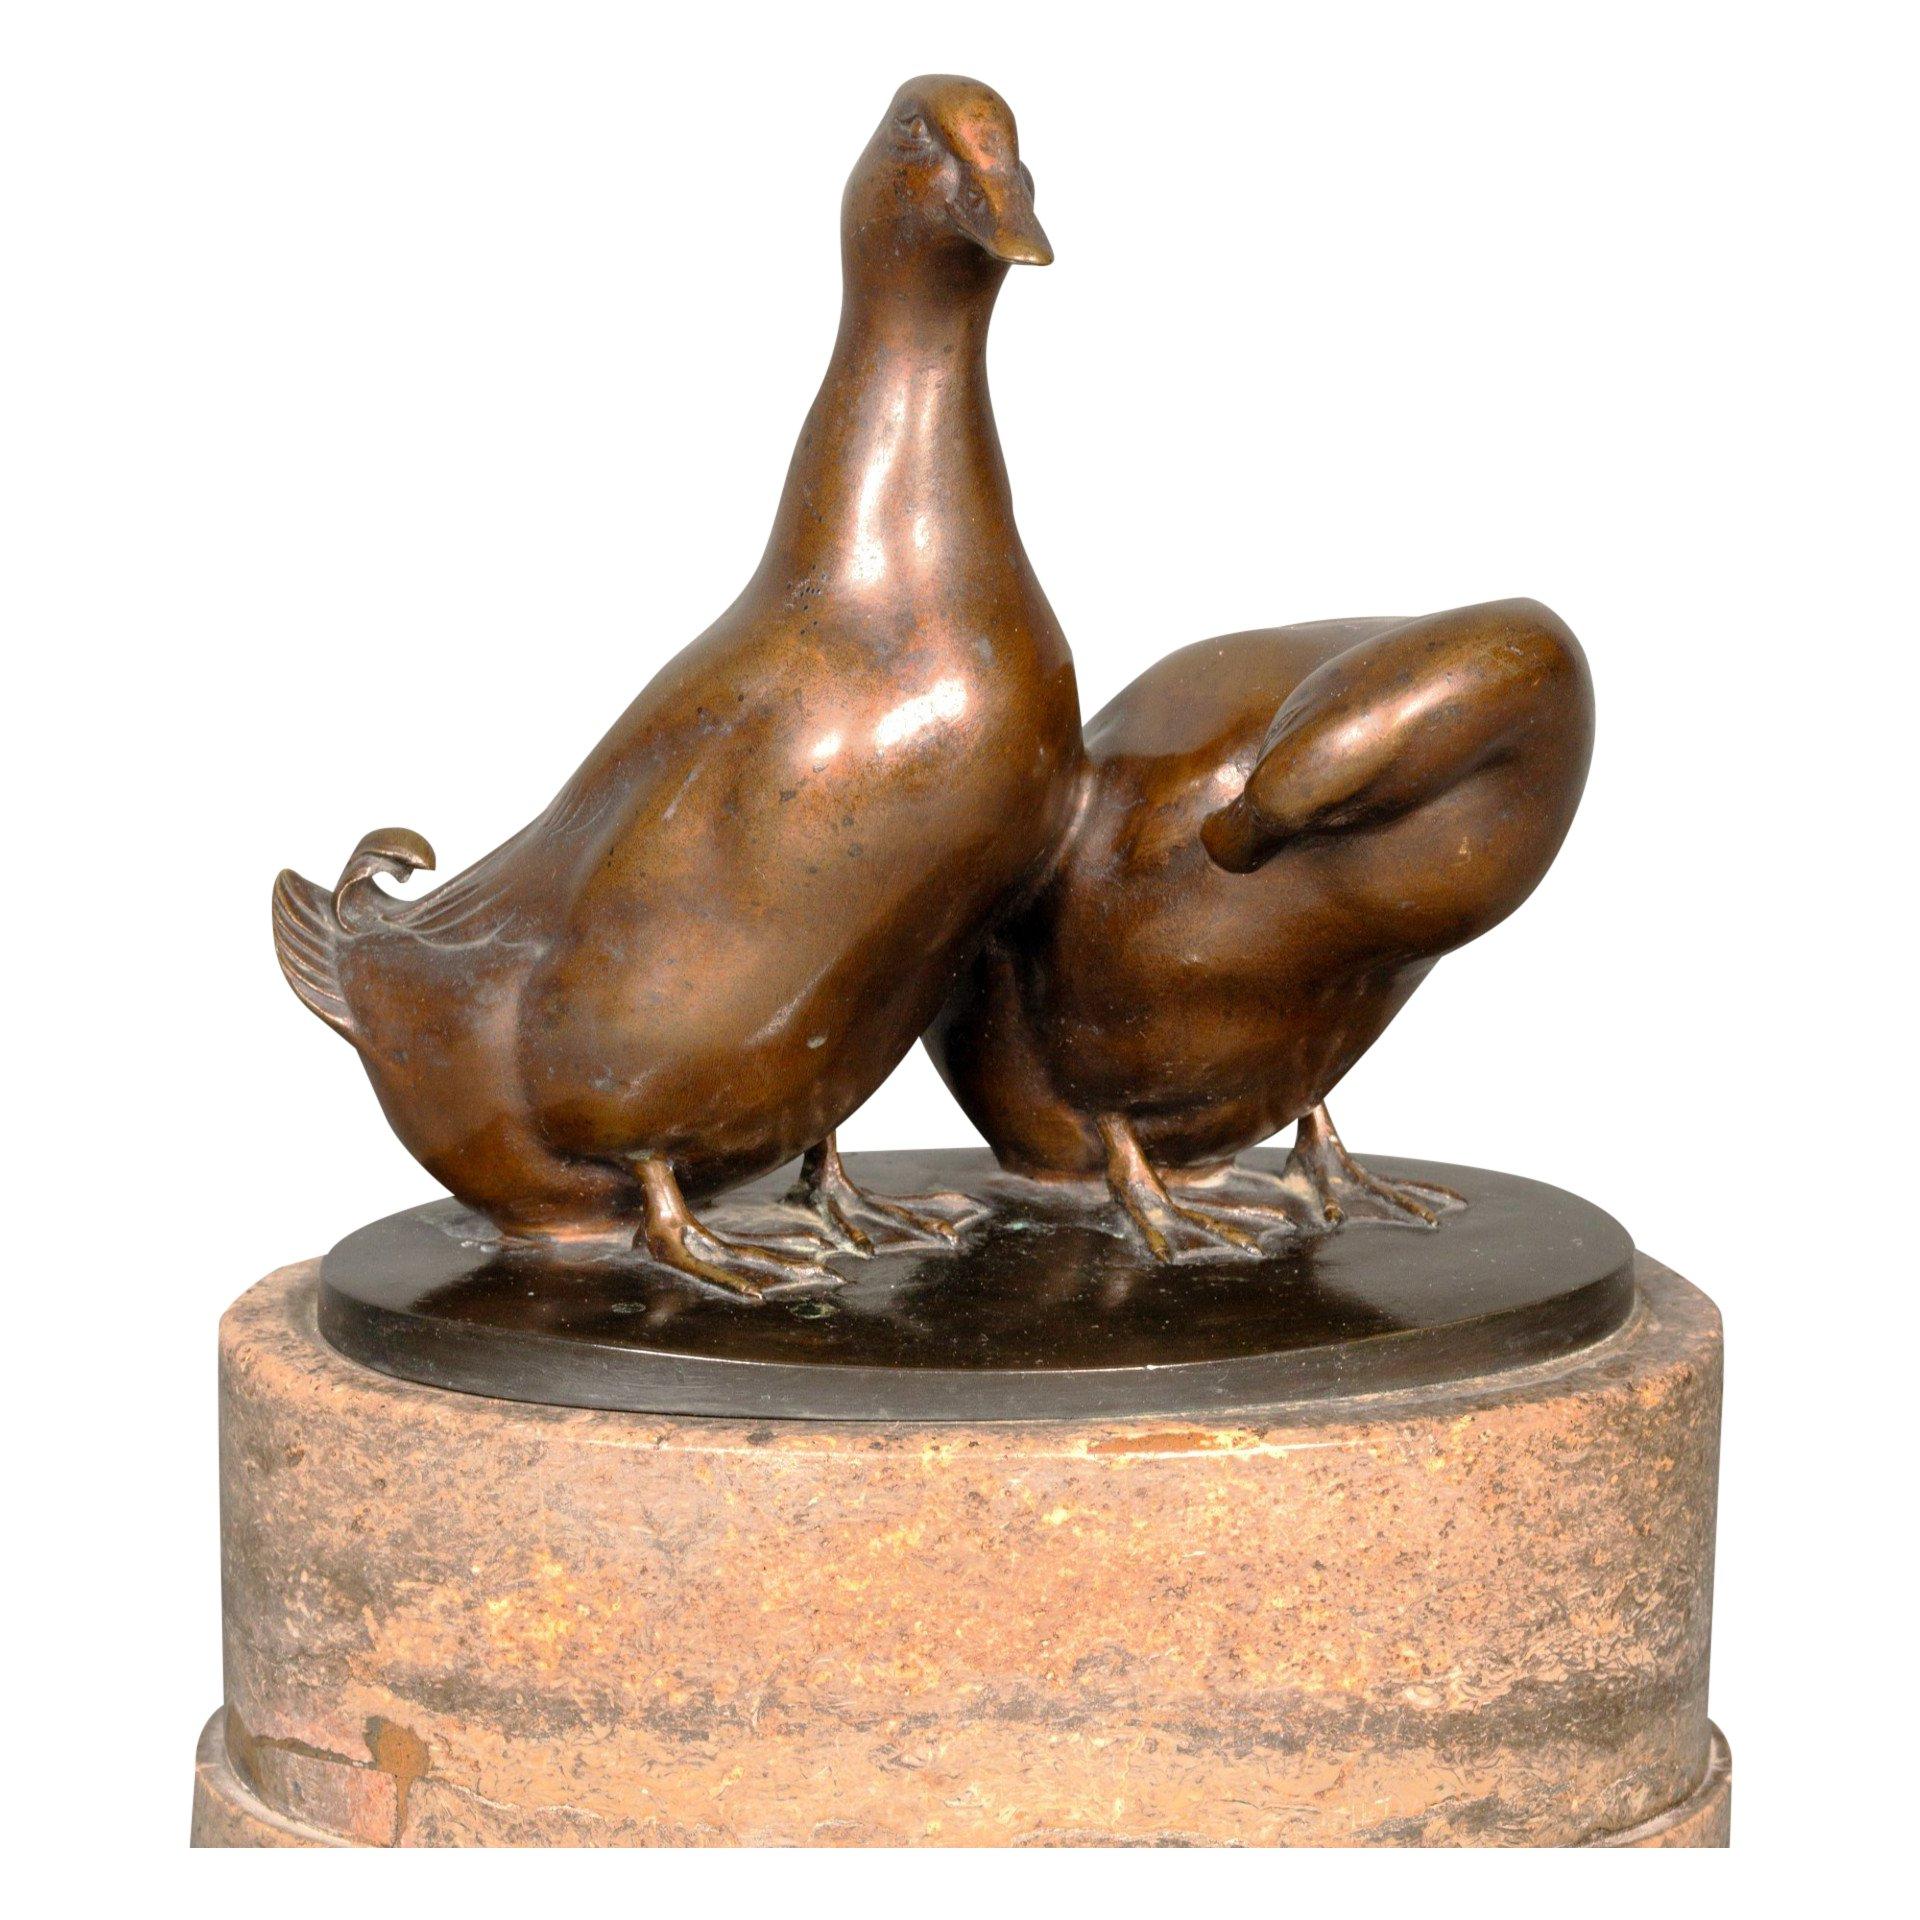 Carl Brasch Figurative Sculpture - A pair of ducks by Carl August Brasch.